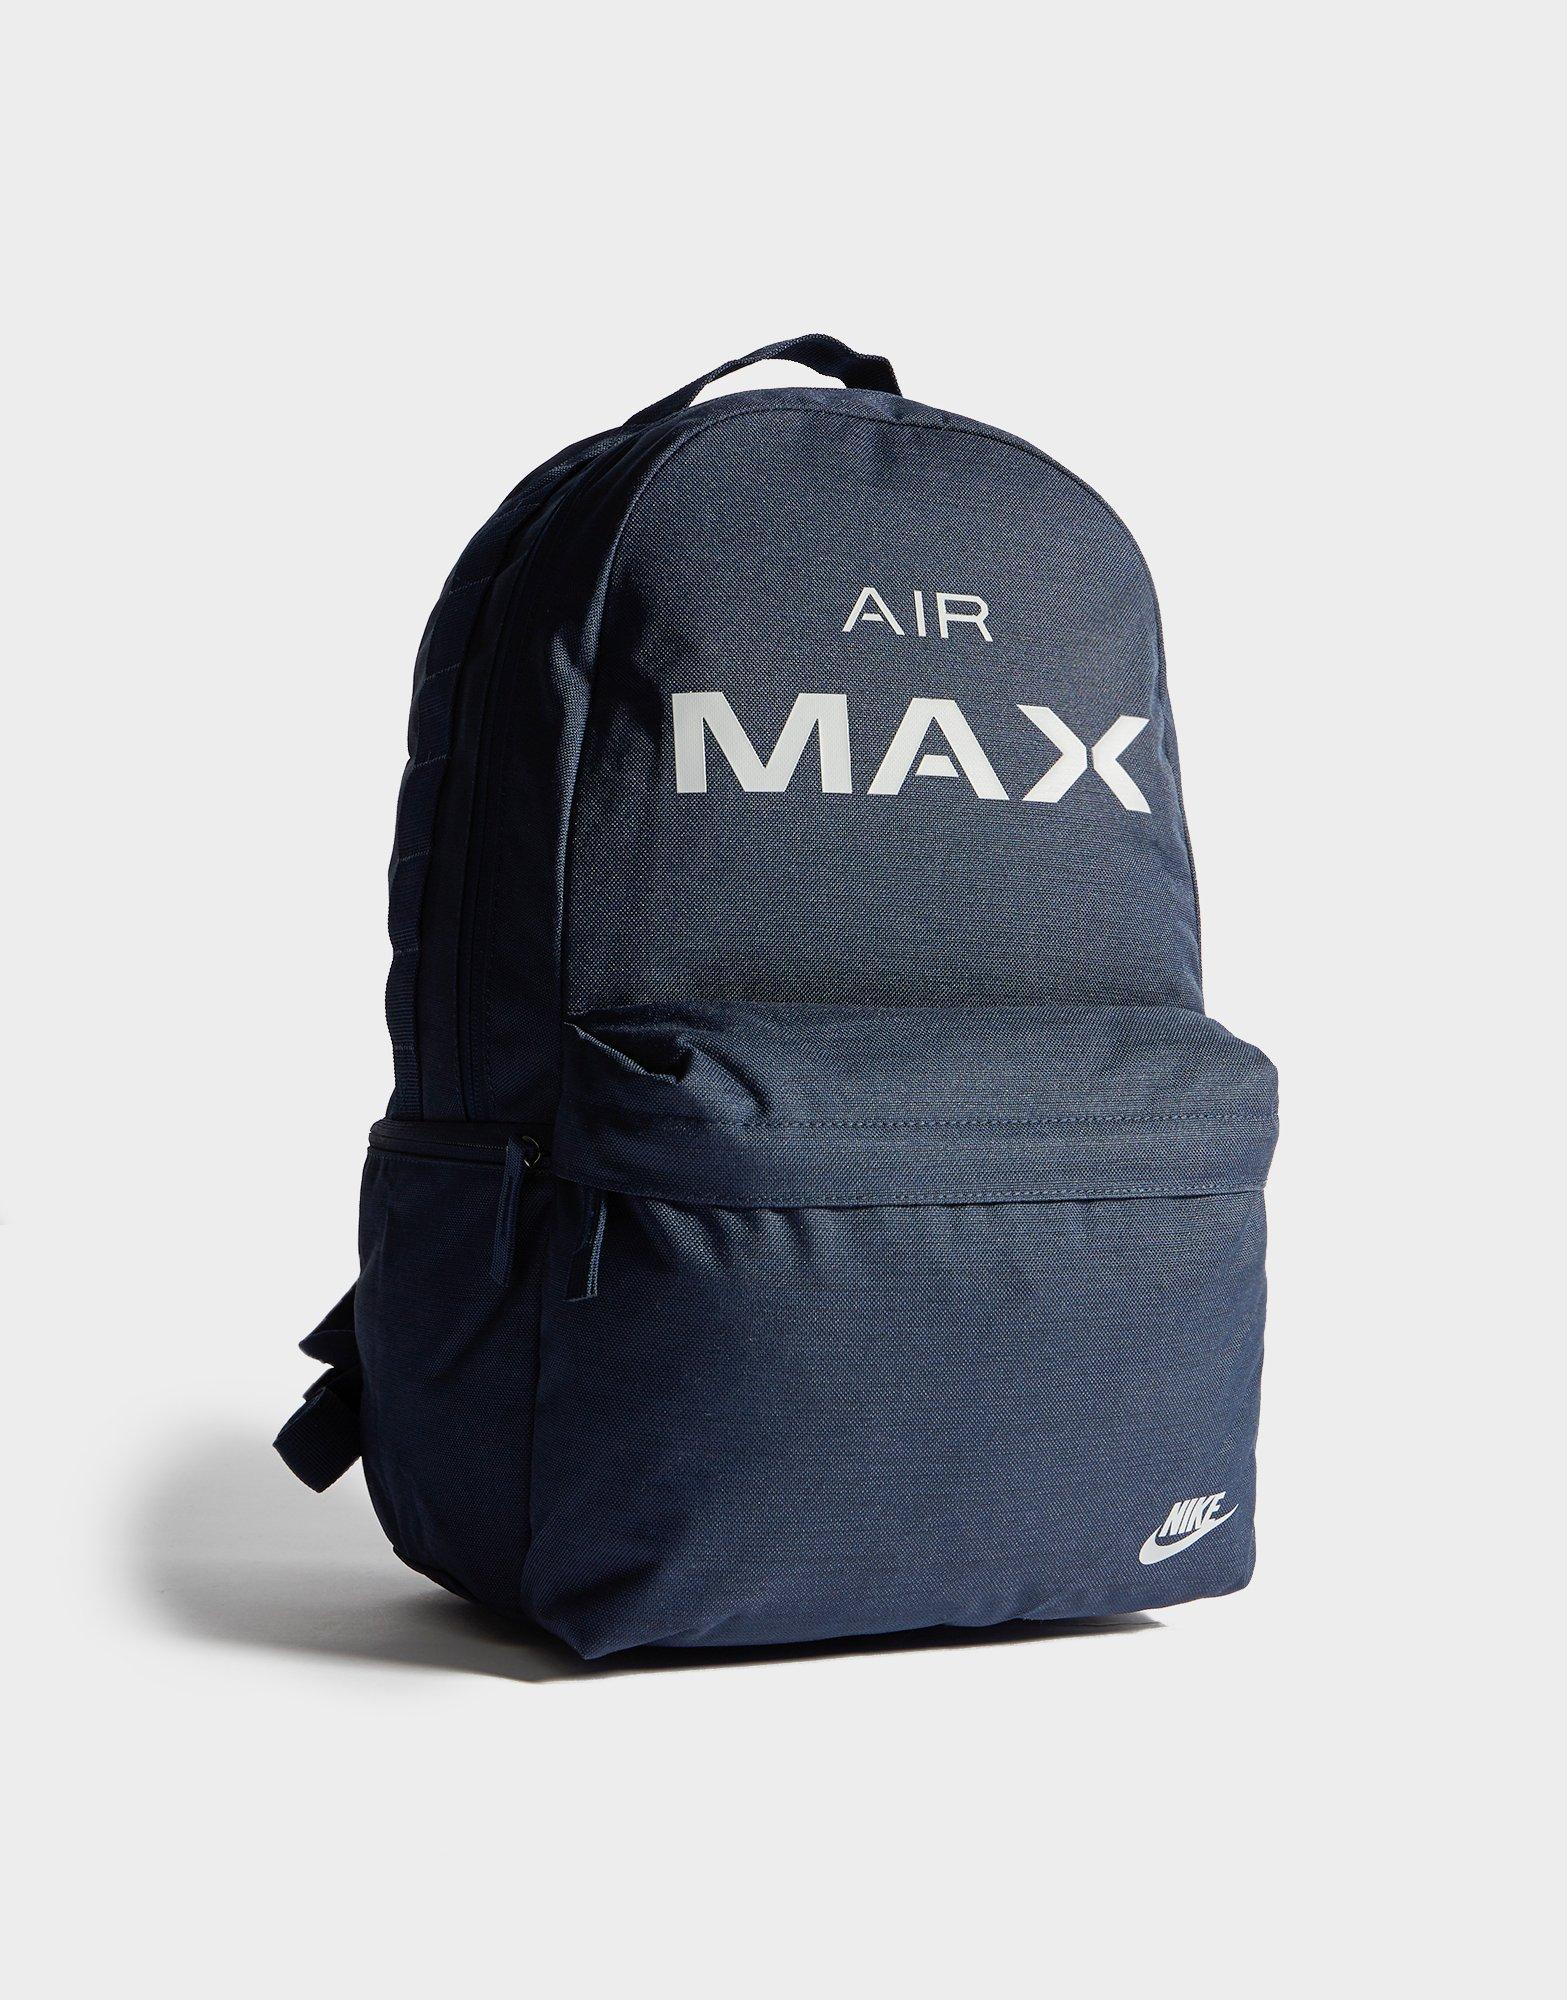 nike air max backpack black